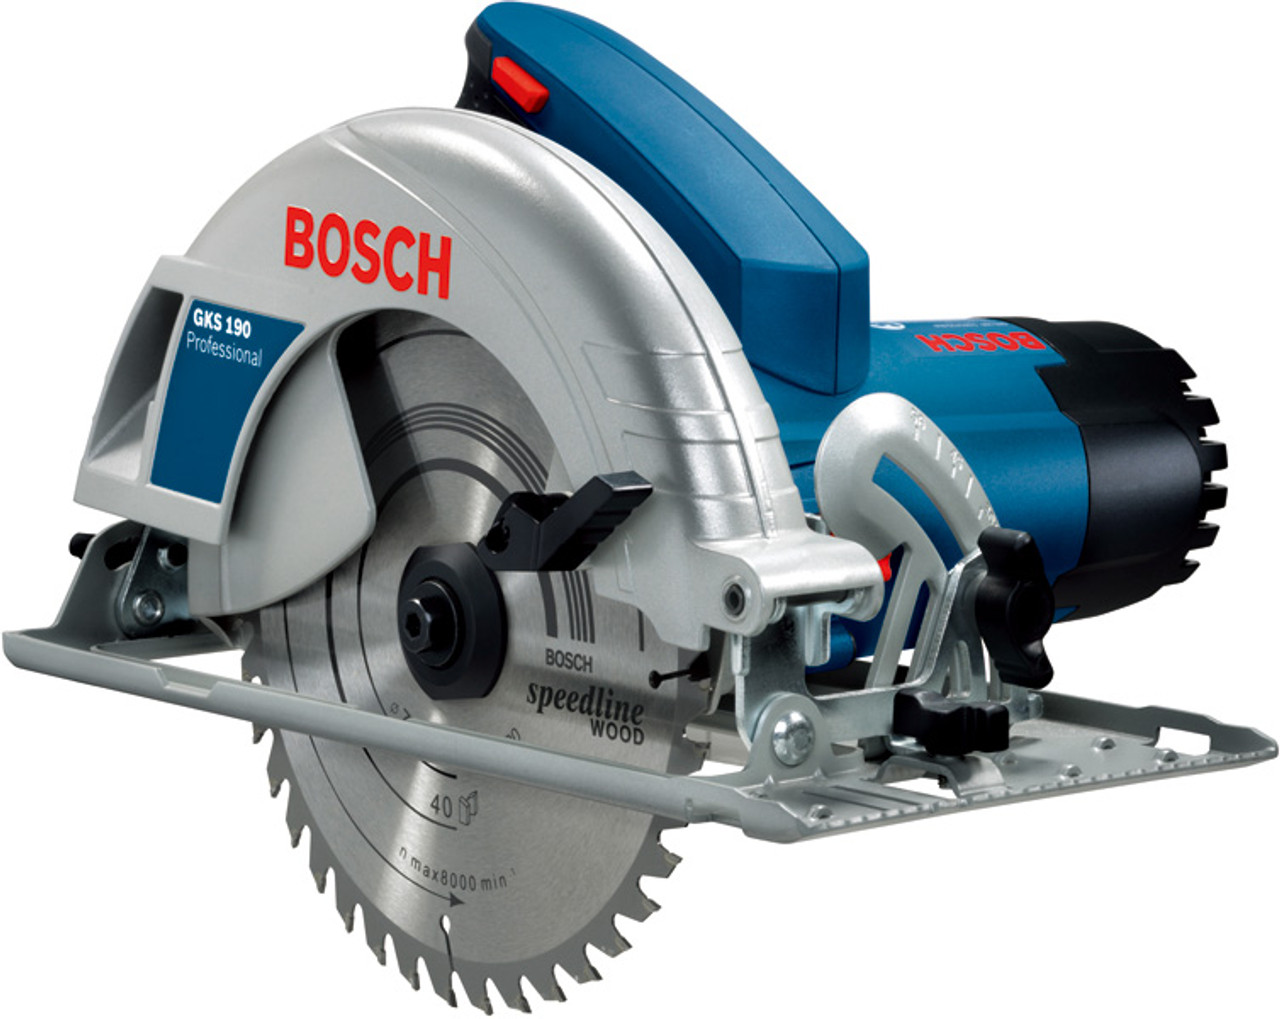 Bosch Circular Saw GKS 190